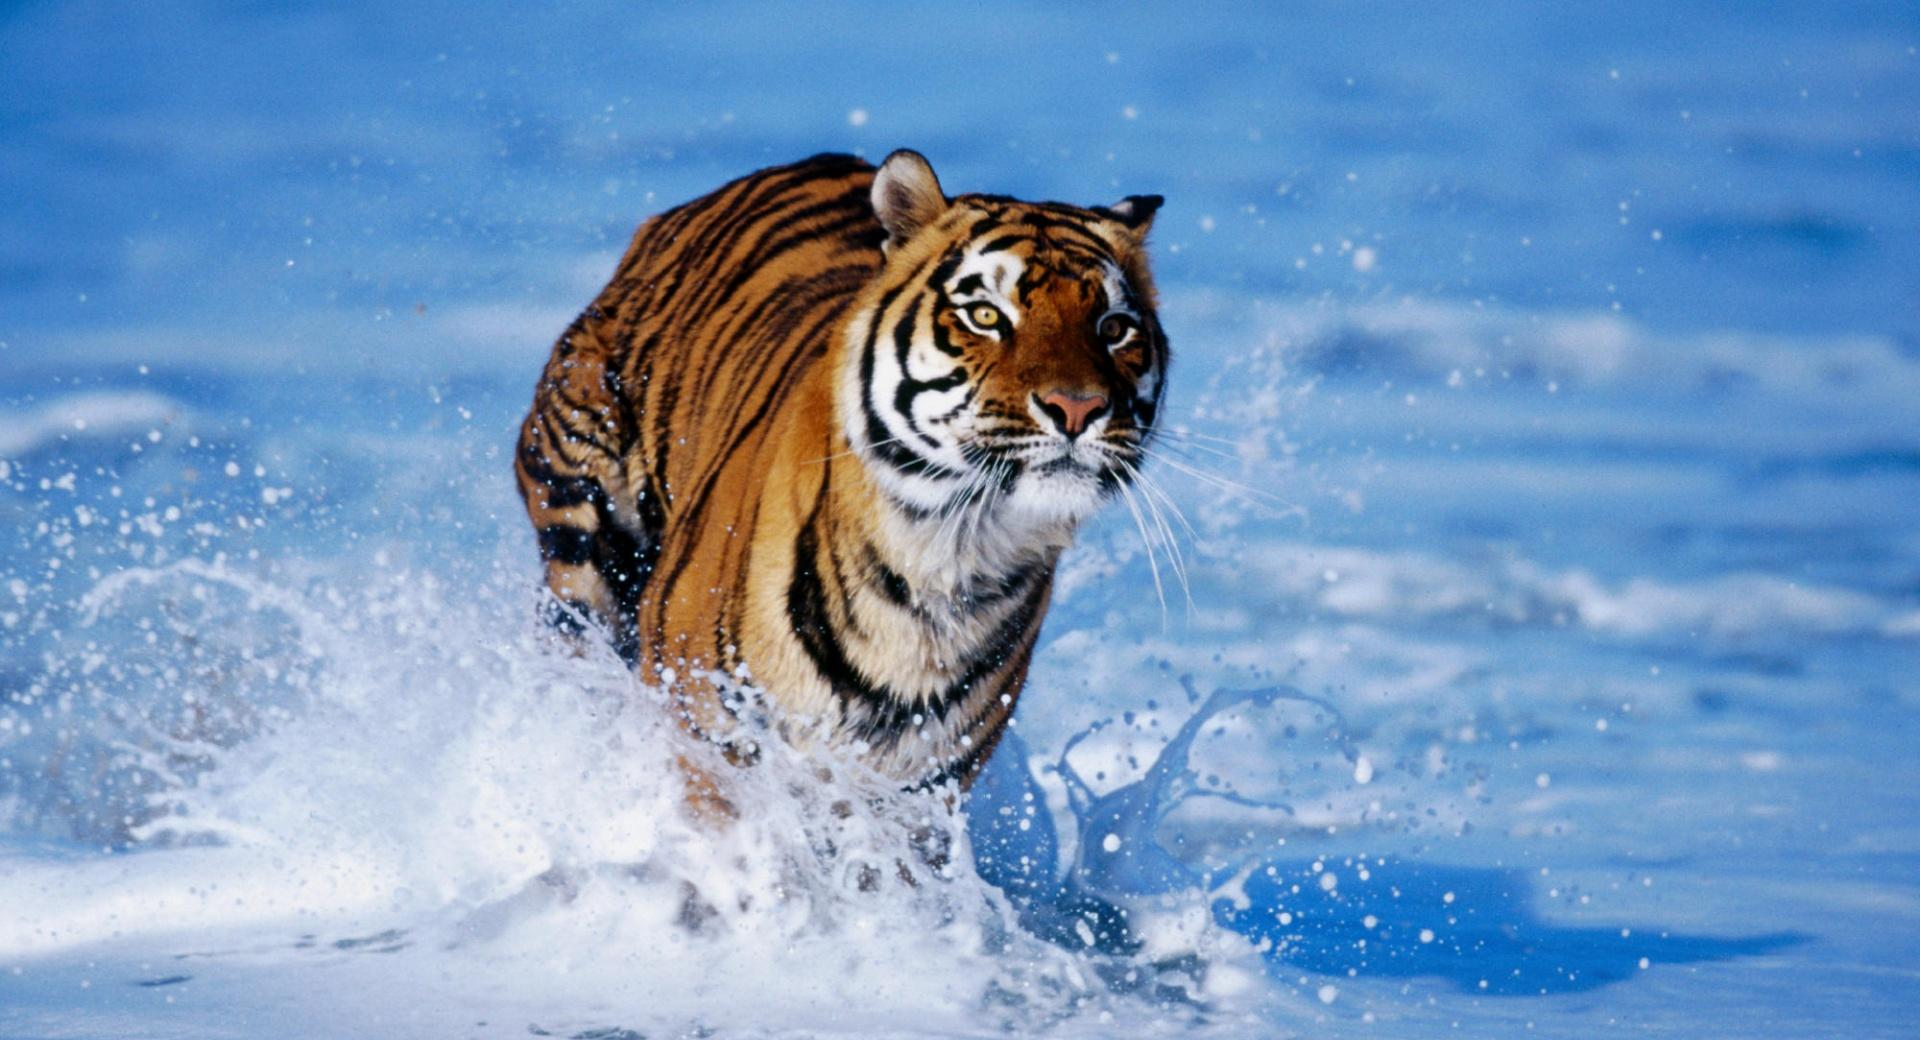 Bengal Tiger Panthera Tigris Tigris at 1152 x 864 size wallpapers HD quality